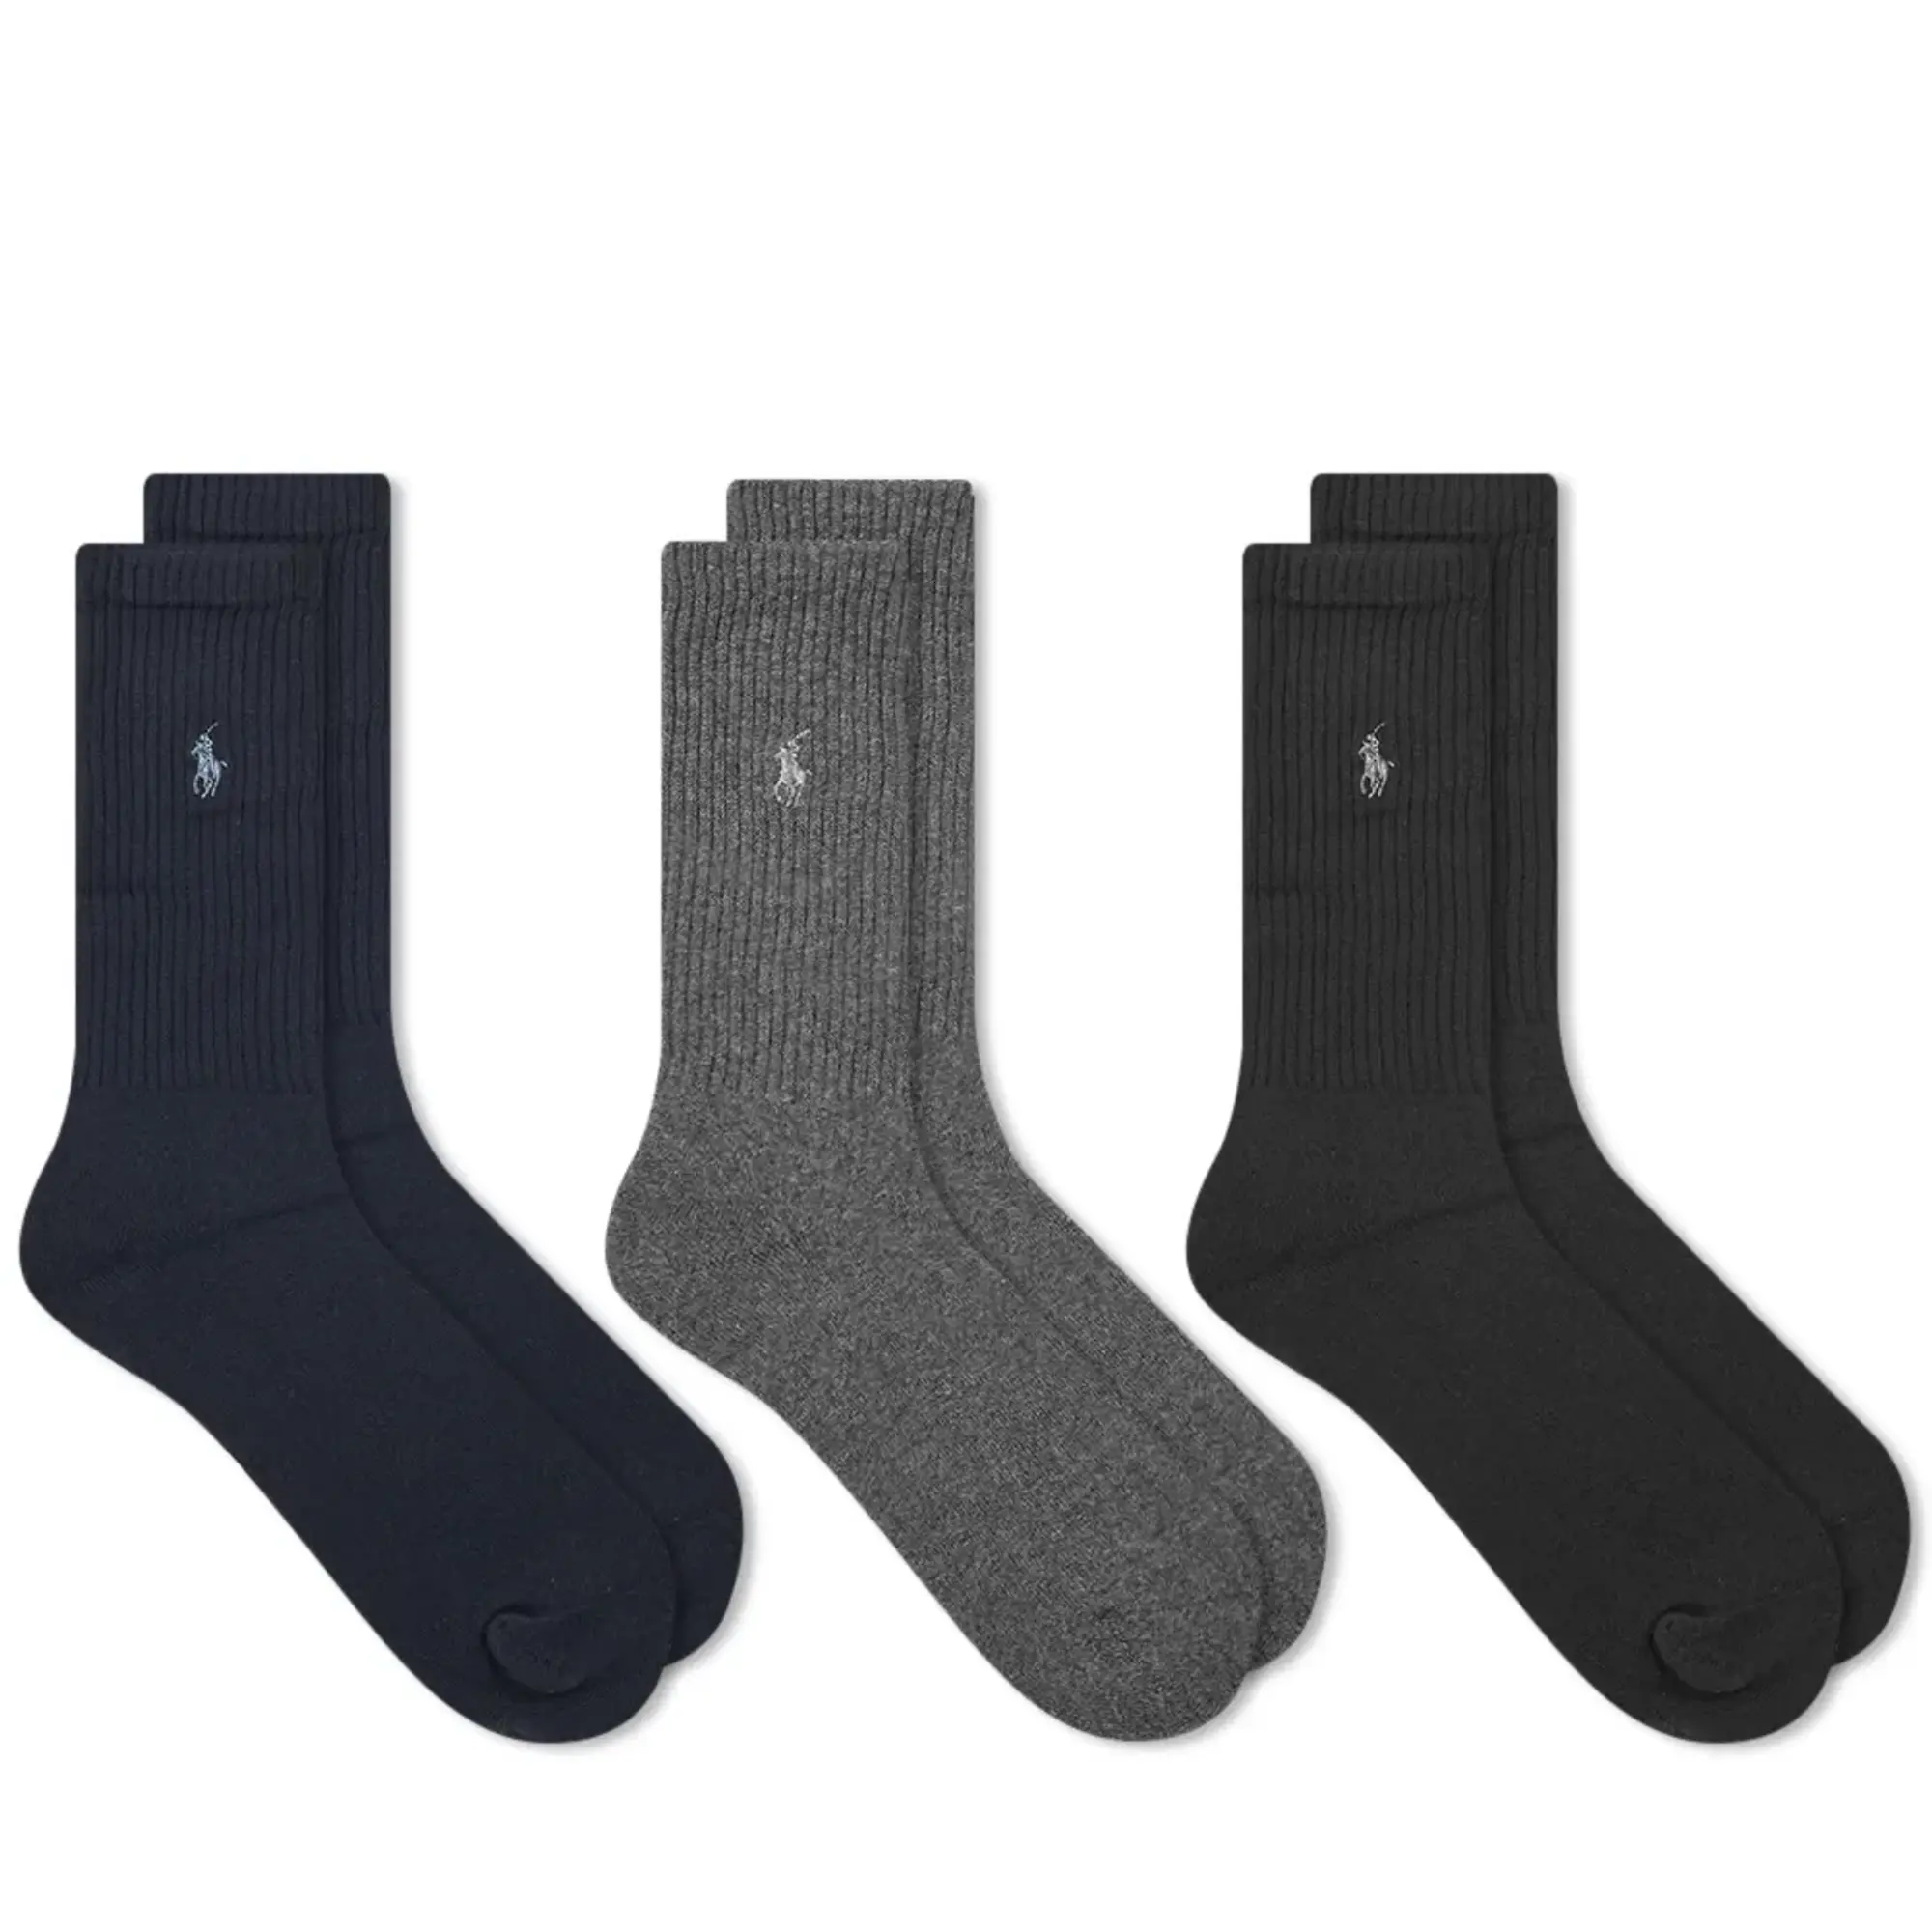 Polo Ralph Lauren Crew Sock 3-Pack - Navy / Charcoal Heather / Black